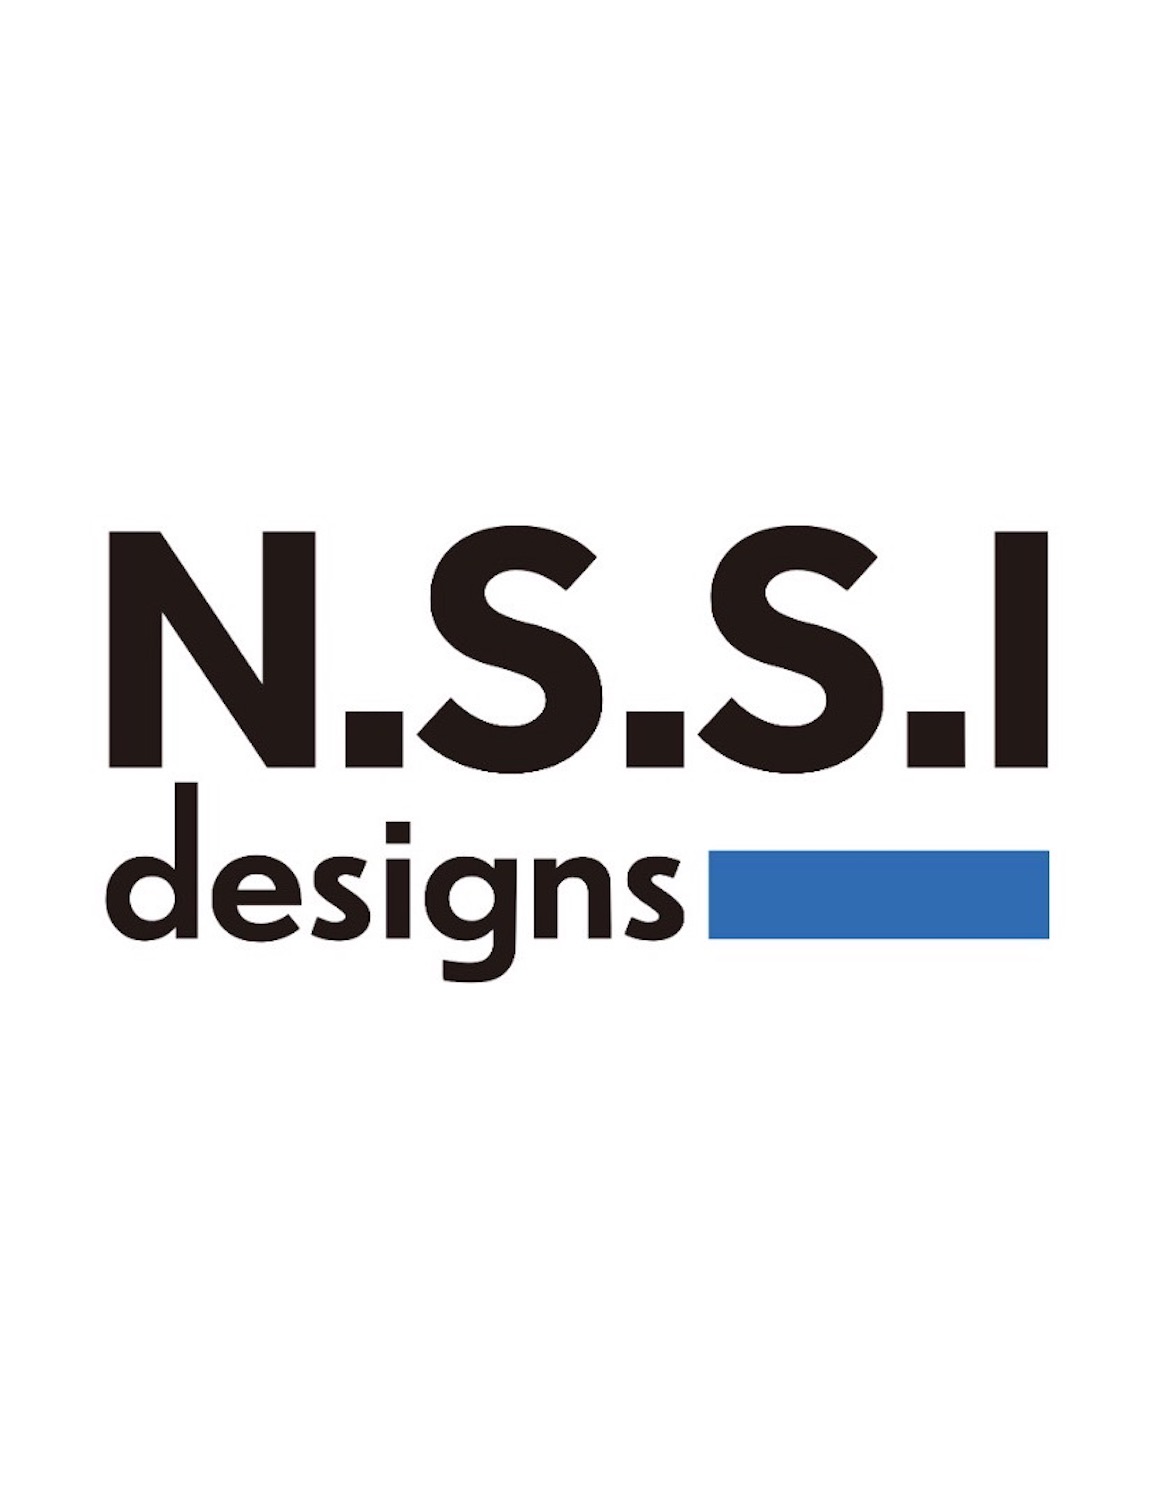 株式会社 N.S.S.I designs